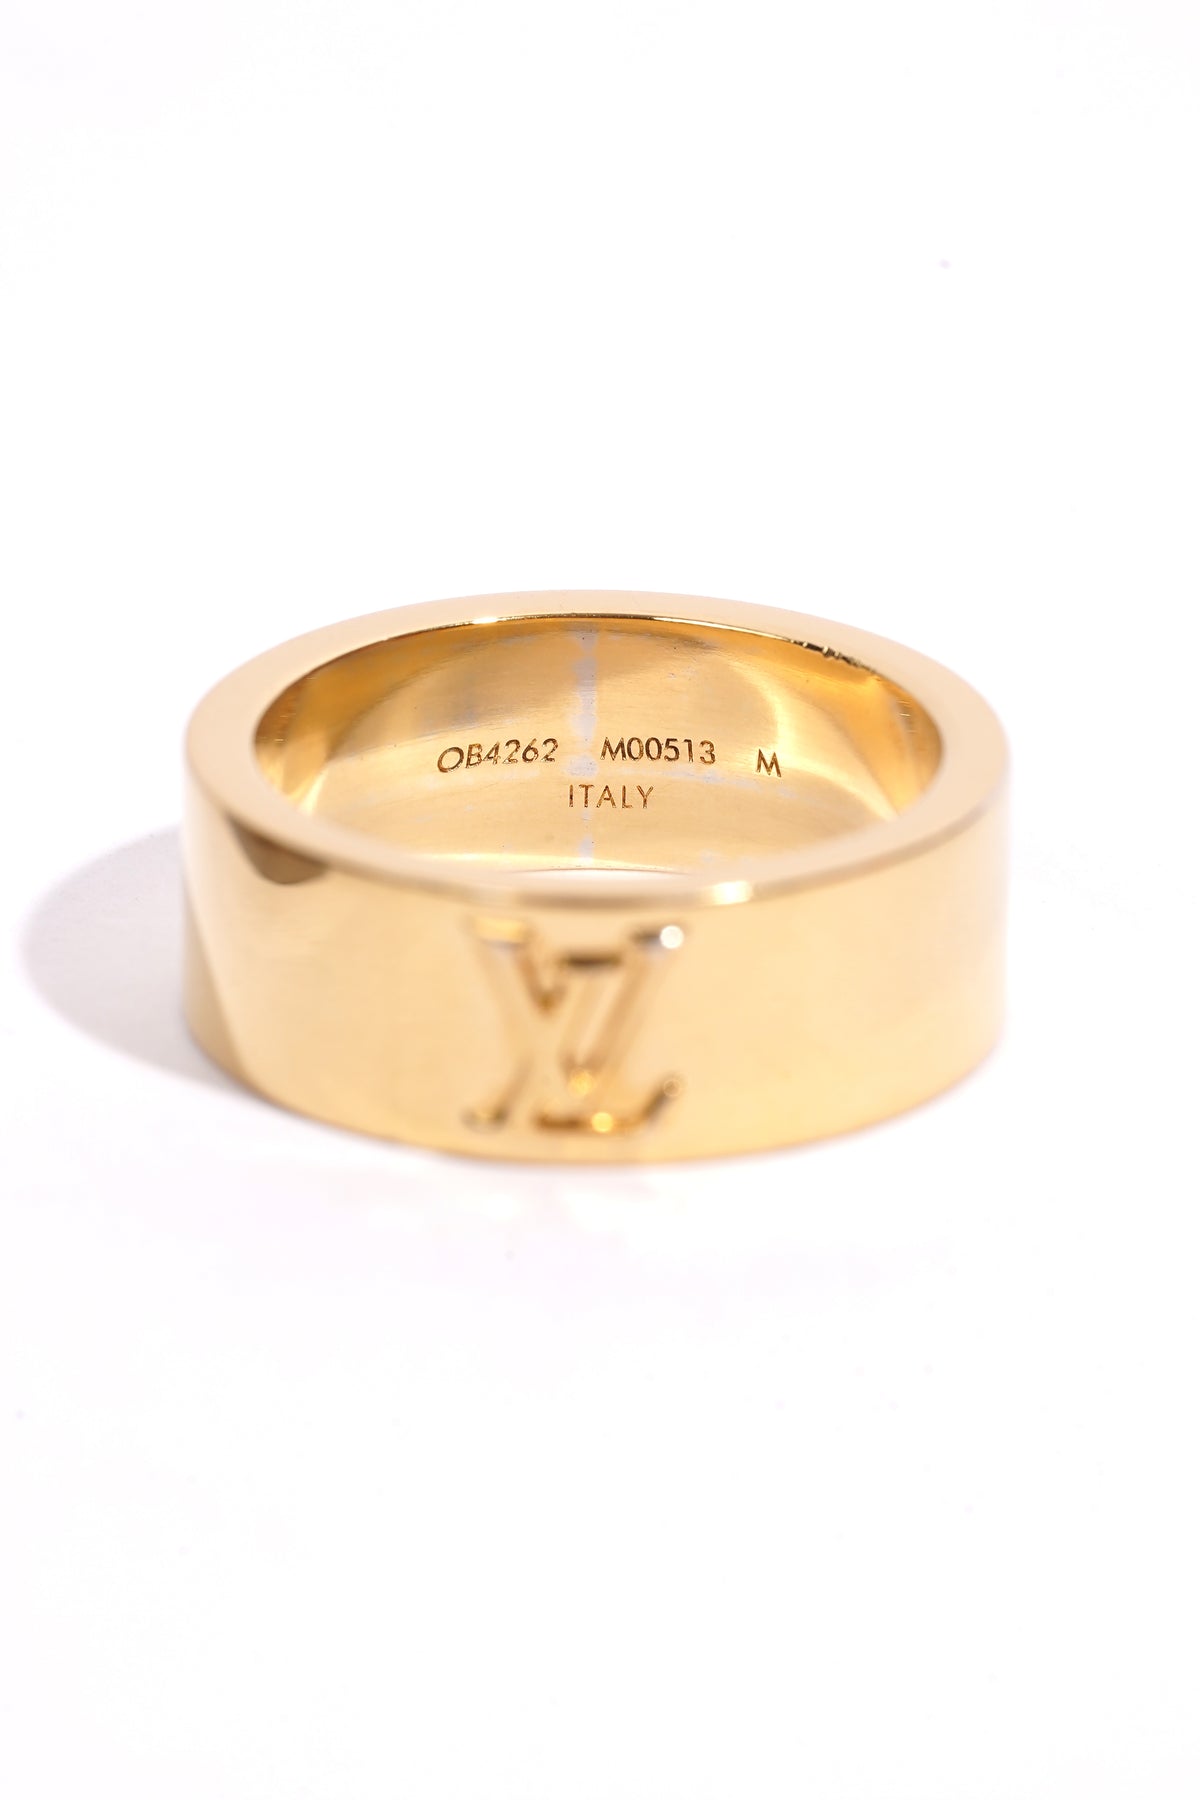 Louis Vuitton LV Instinct Set of 2 Rings Gold Metal. Size M